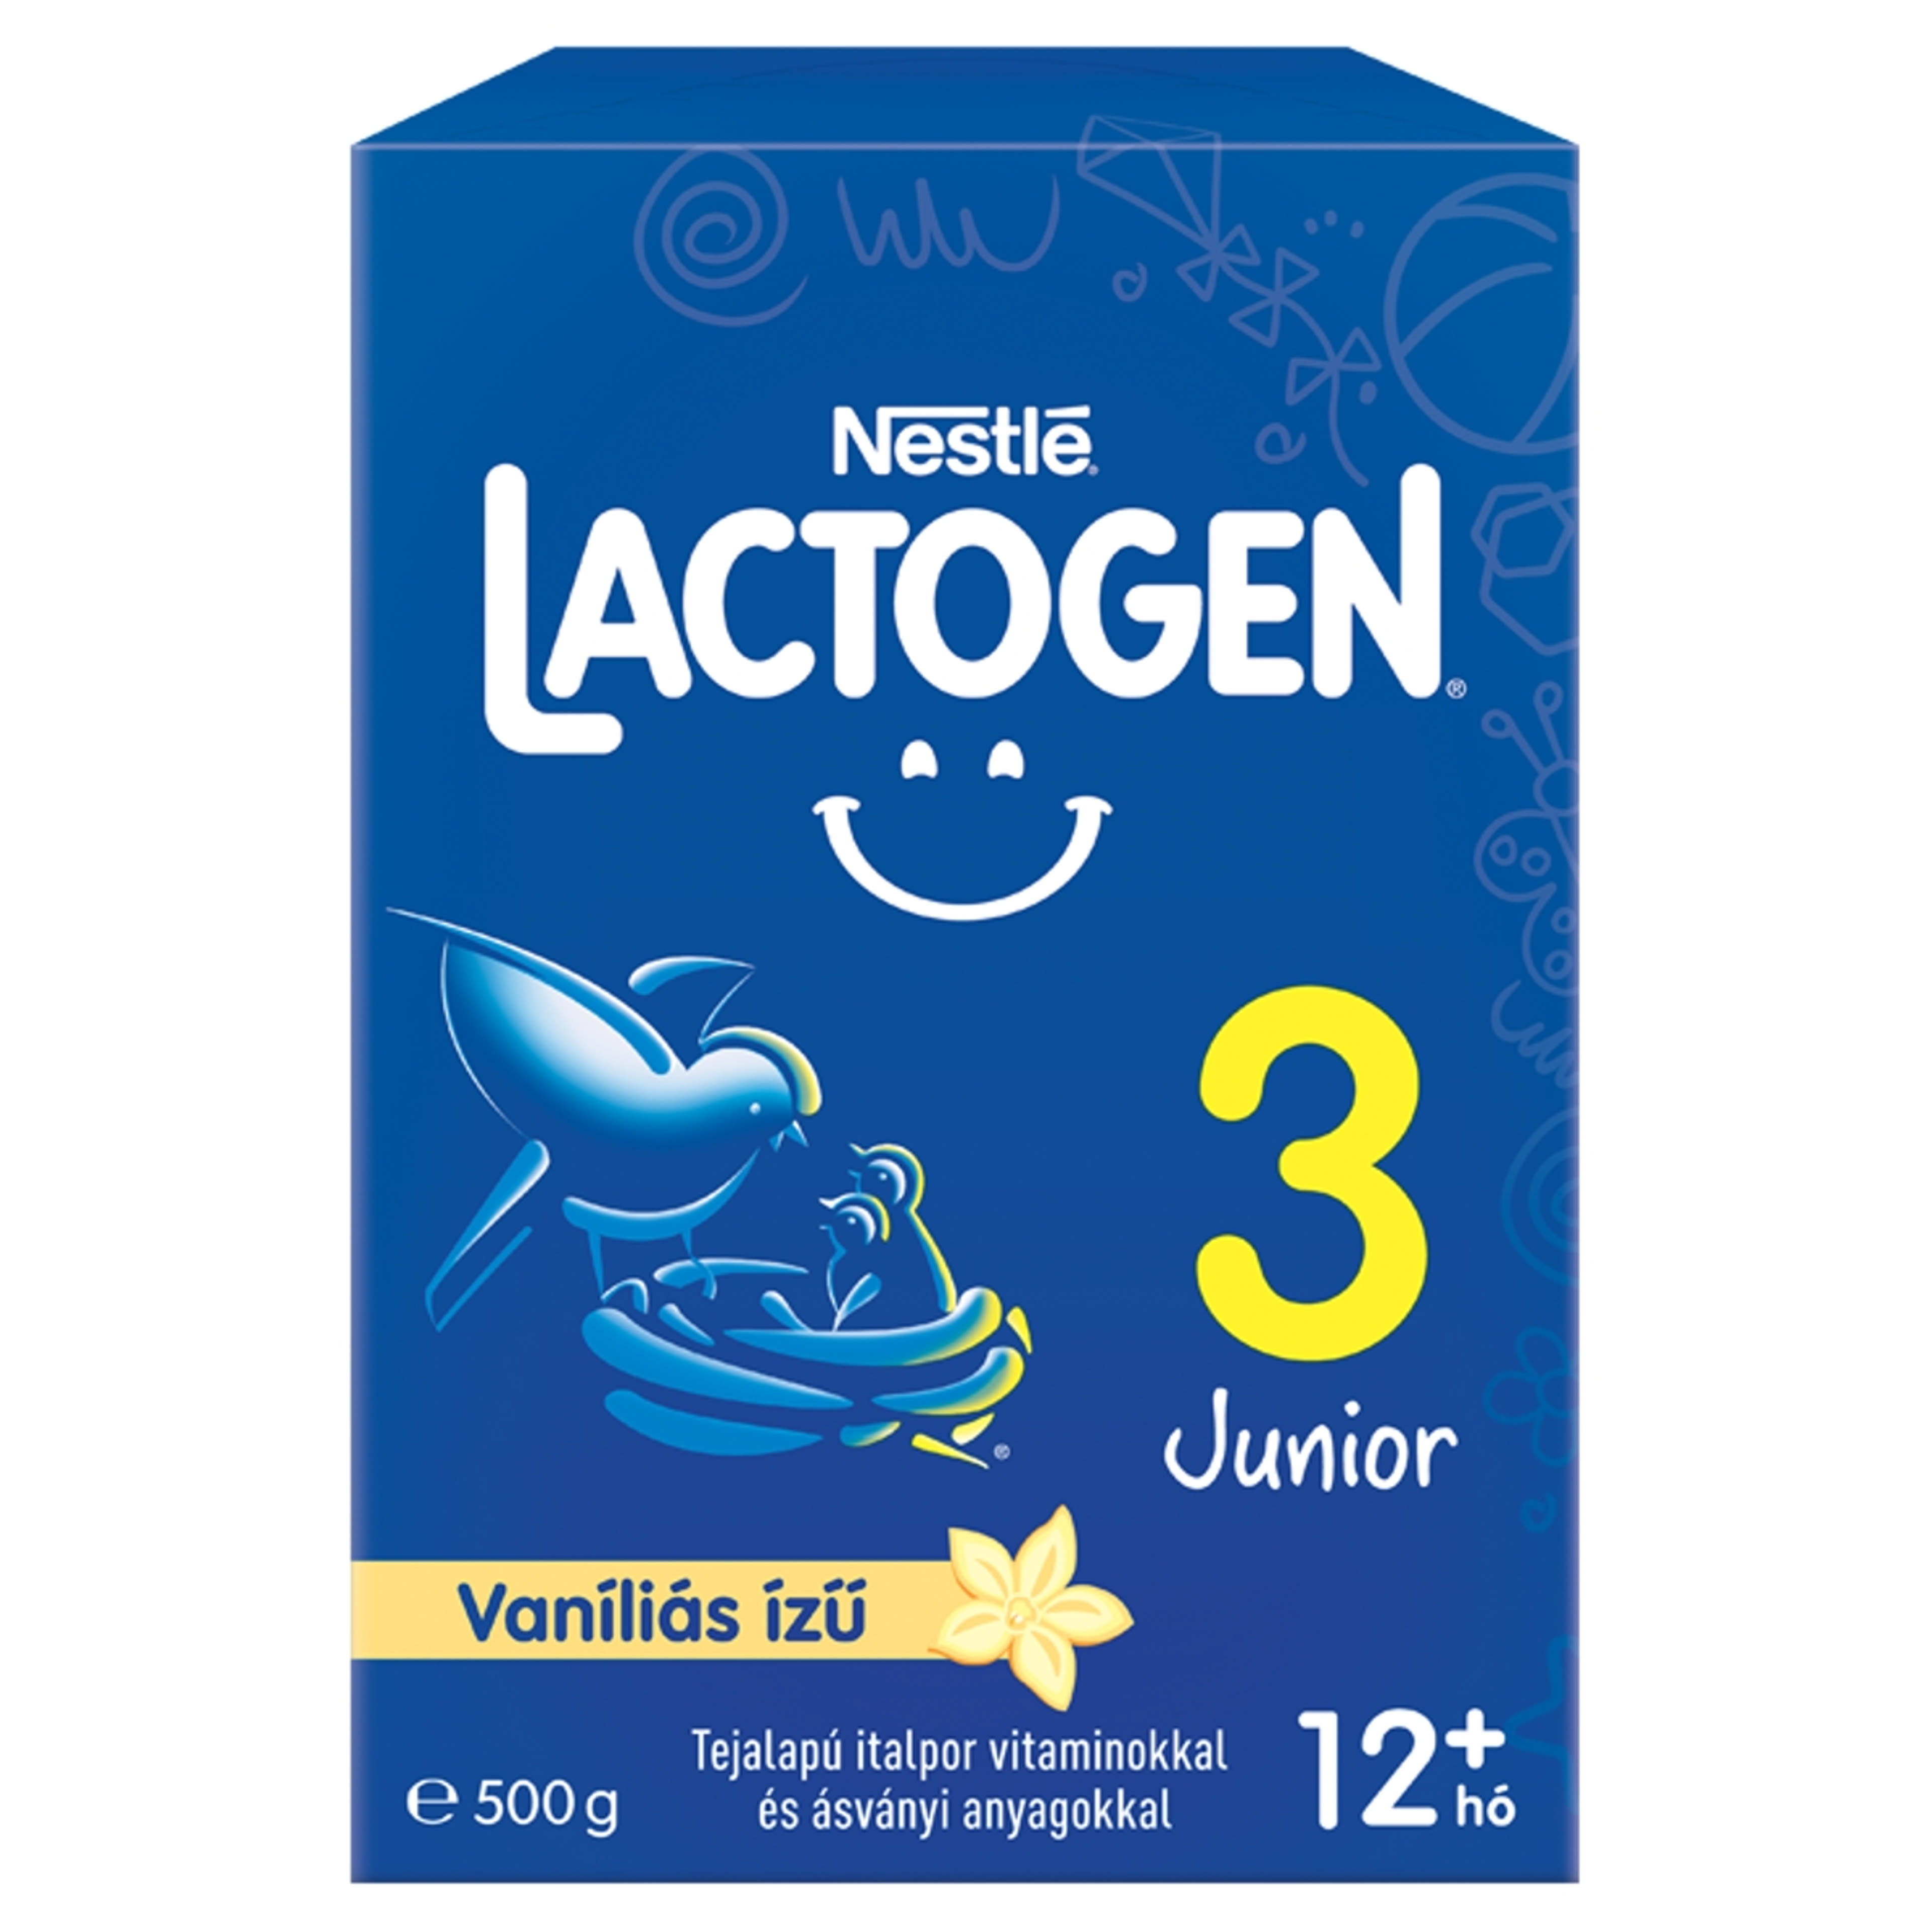 Nestlé Lactogen 3 Junior vaníliás ízű tejalapú italpor, 12 hónapos kortól - 500 g